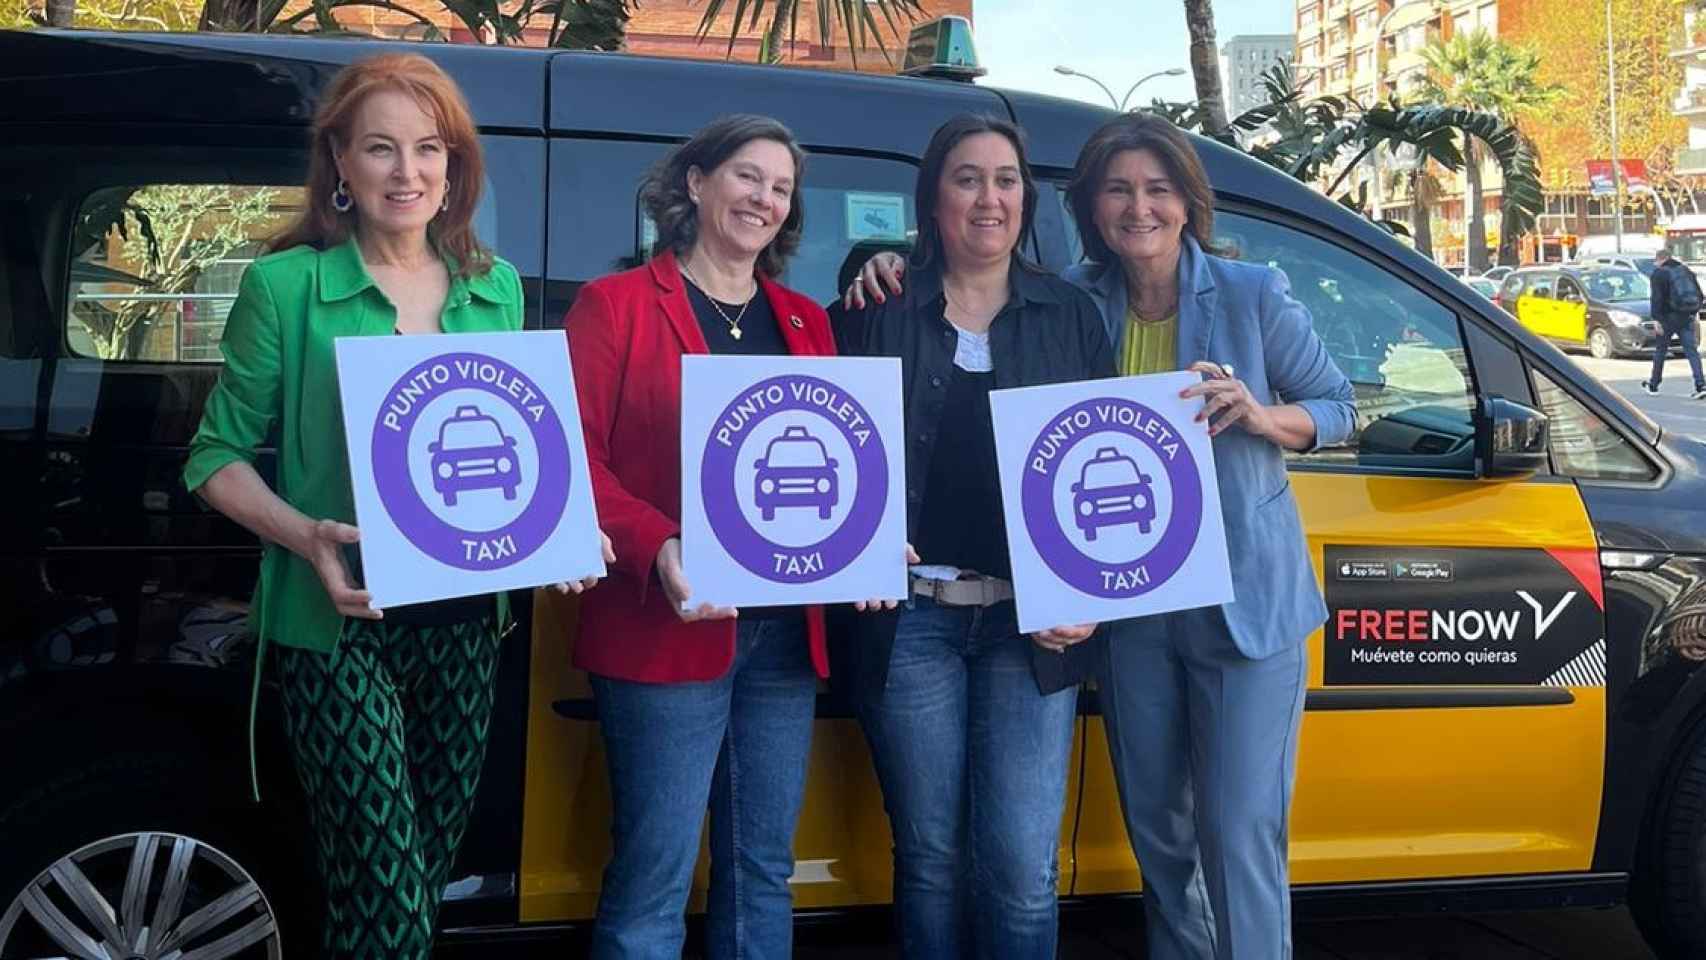 Free Now presenta los puntos violeta de sus taxis en Barcelona / CEDIDA